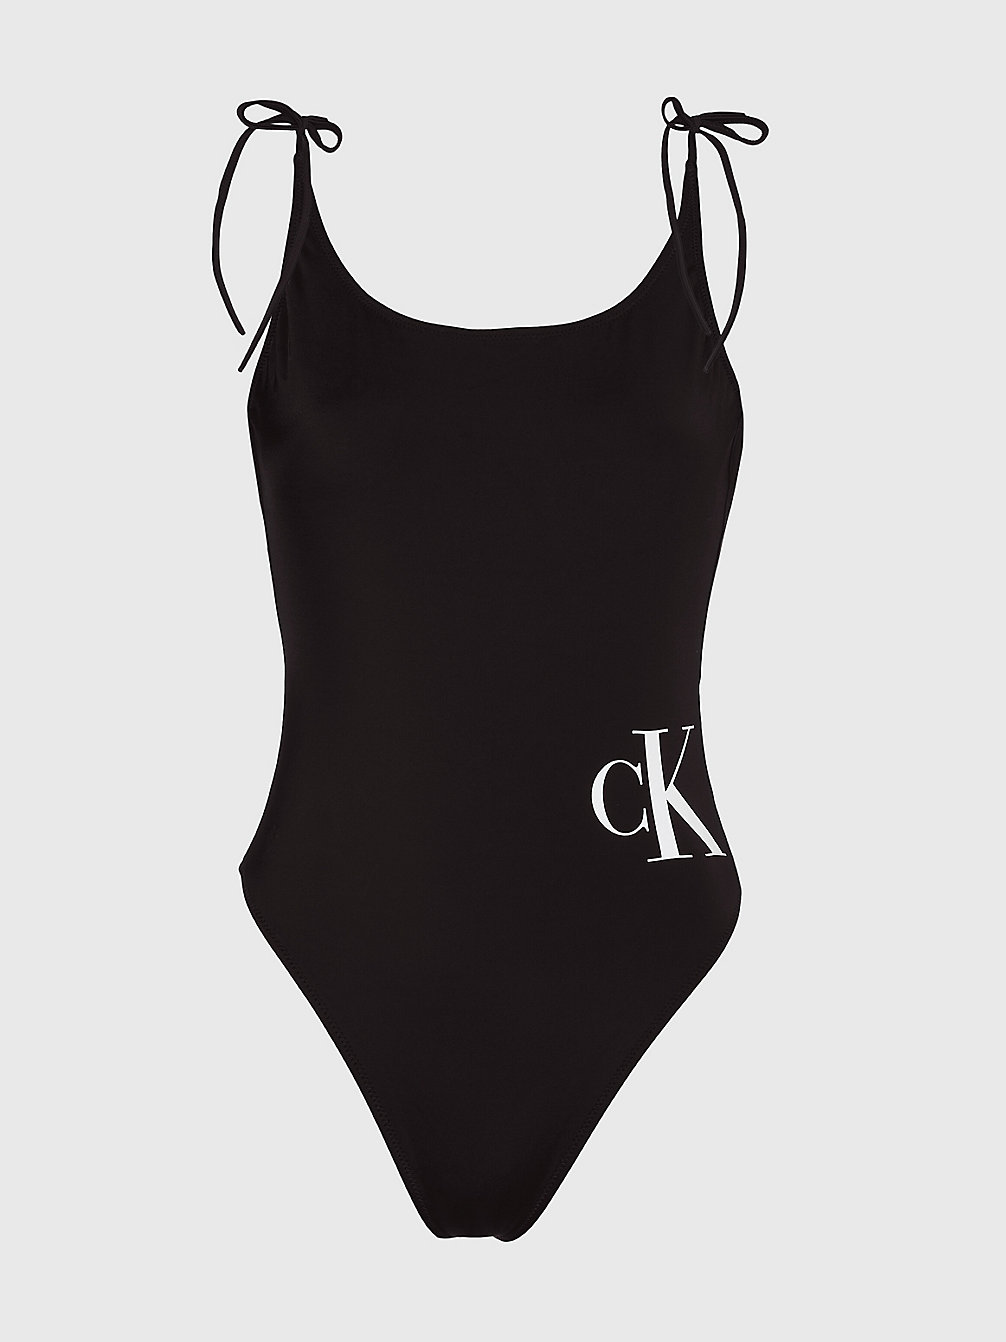 PVH BLACK > Geschenkset Aus Badeanzug, Stirnband Und Handtuch > undefined Damen - Calvin Klein